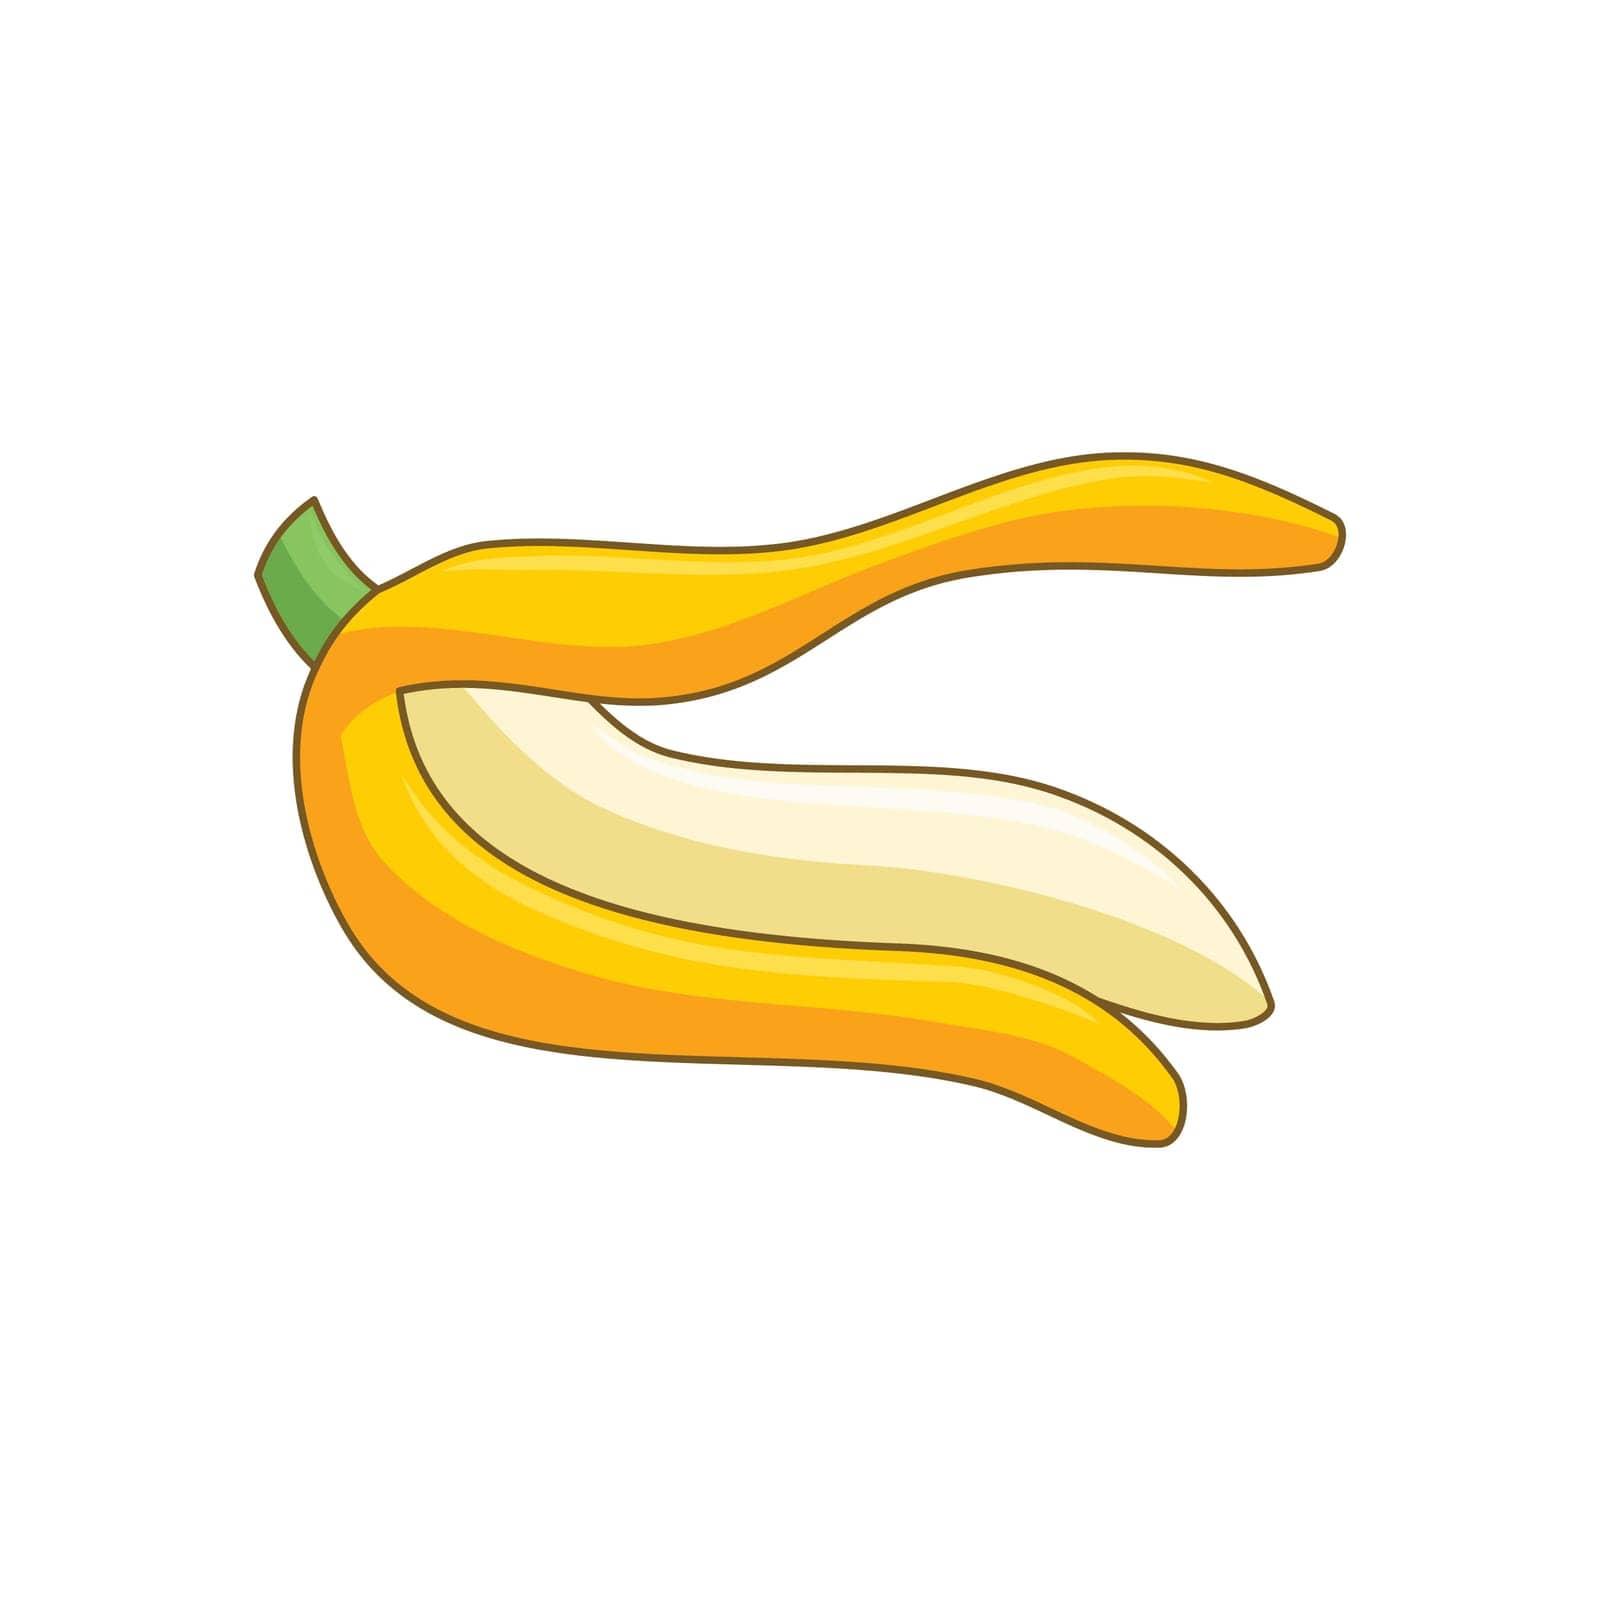 Cartoon bananas. Peel banana, yellow fruit Isolated by alluranet